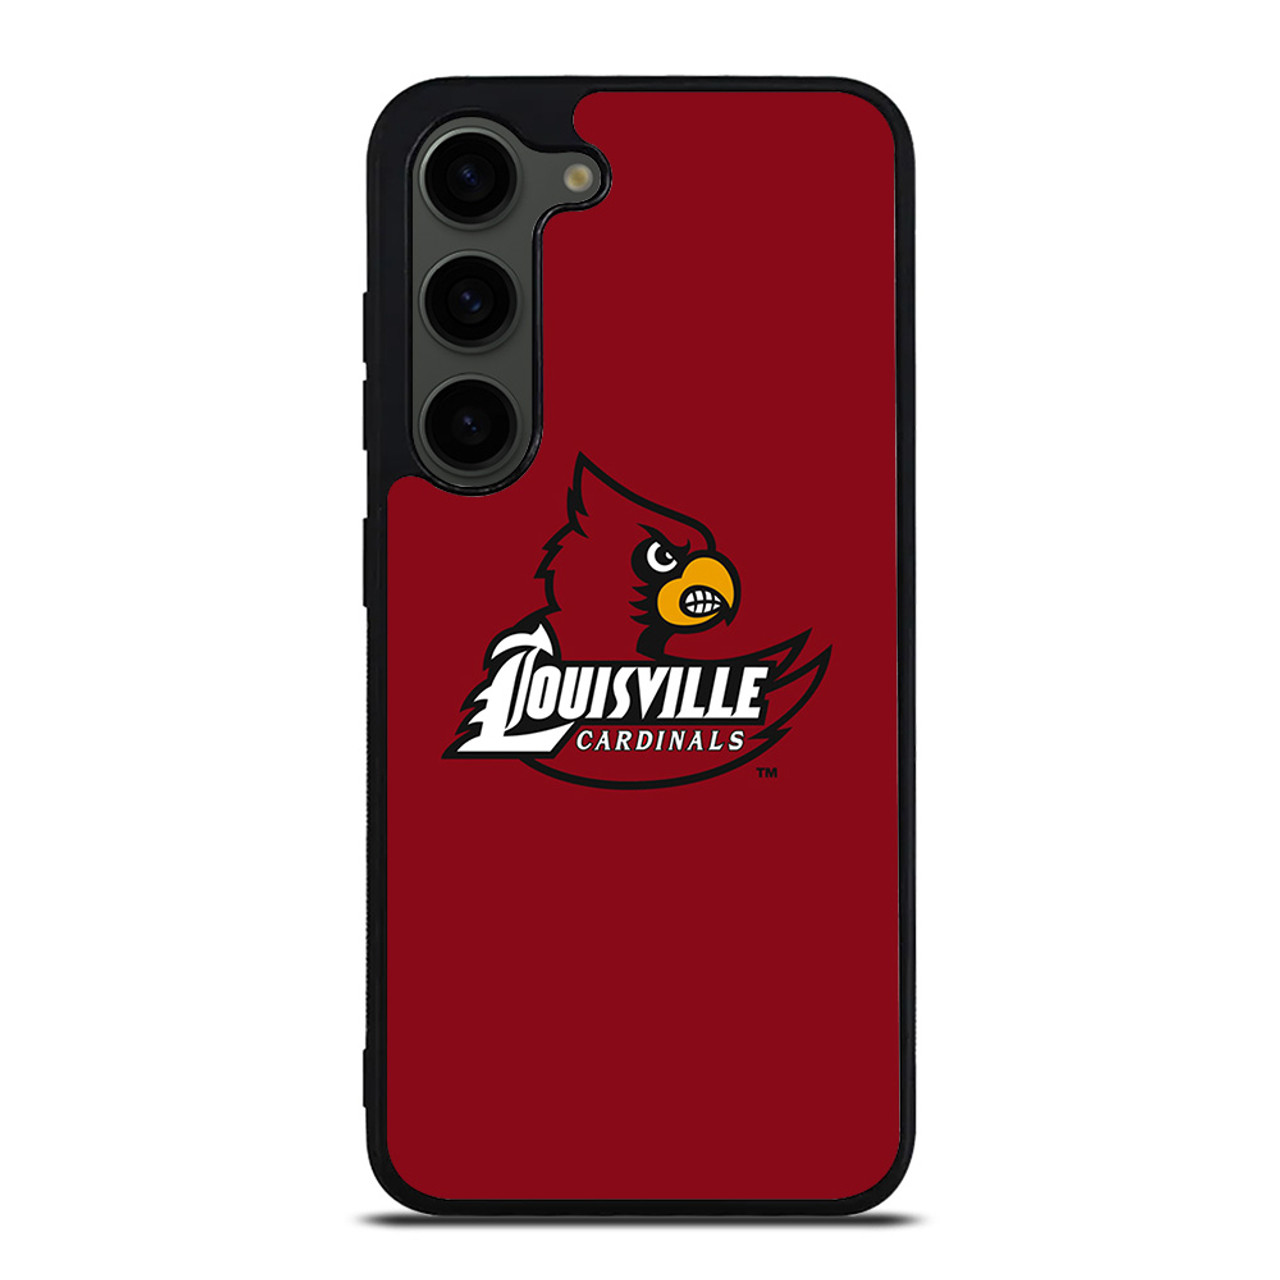 louisville iphone case